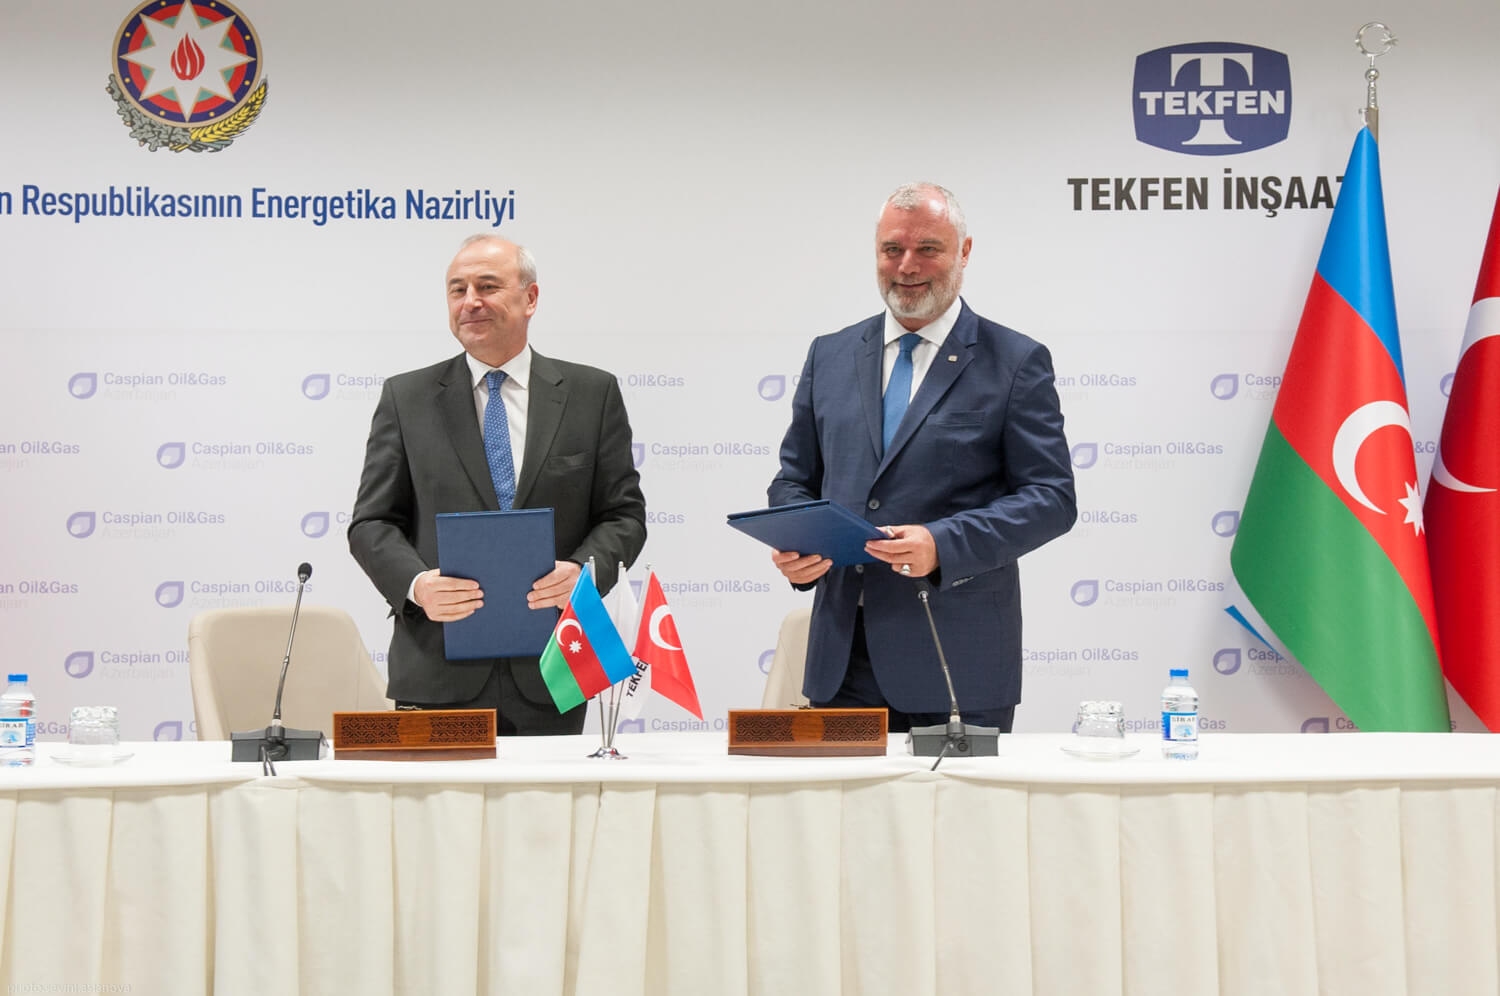 Tekfen İnşaat’tan Azerbaycan’da stratejik iş birliği imzası